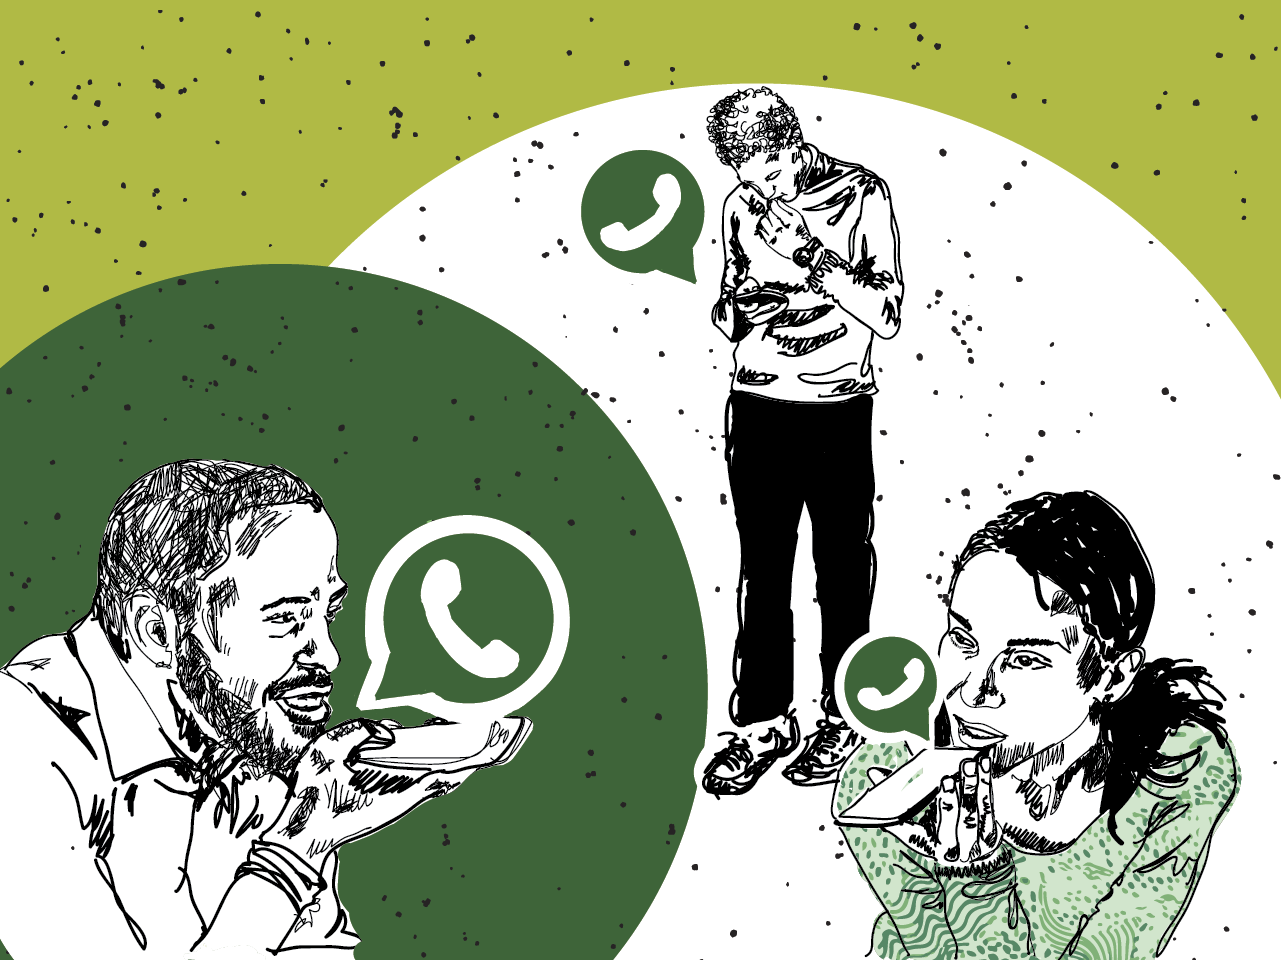 WhatsApp cria função para que usuários possam contornar bloqueios de internet